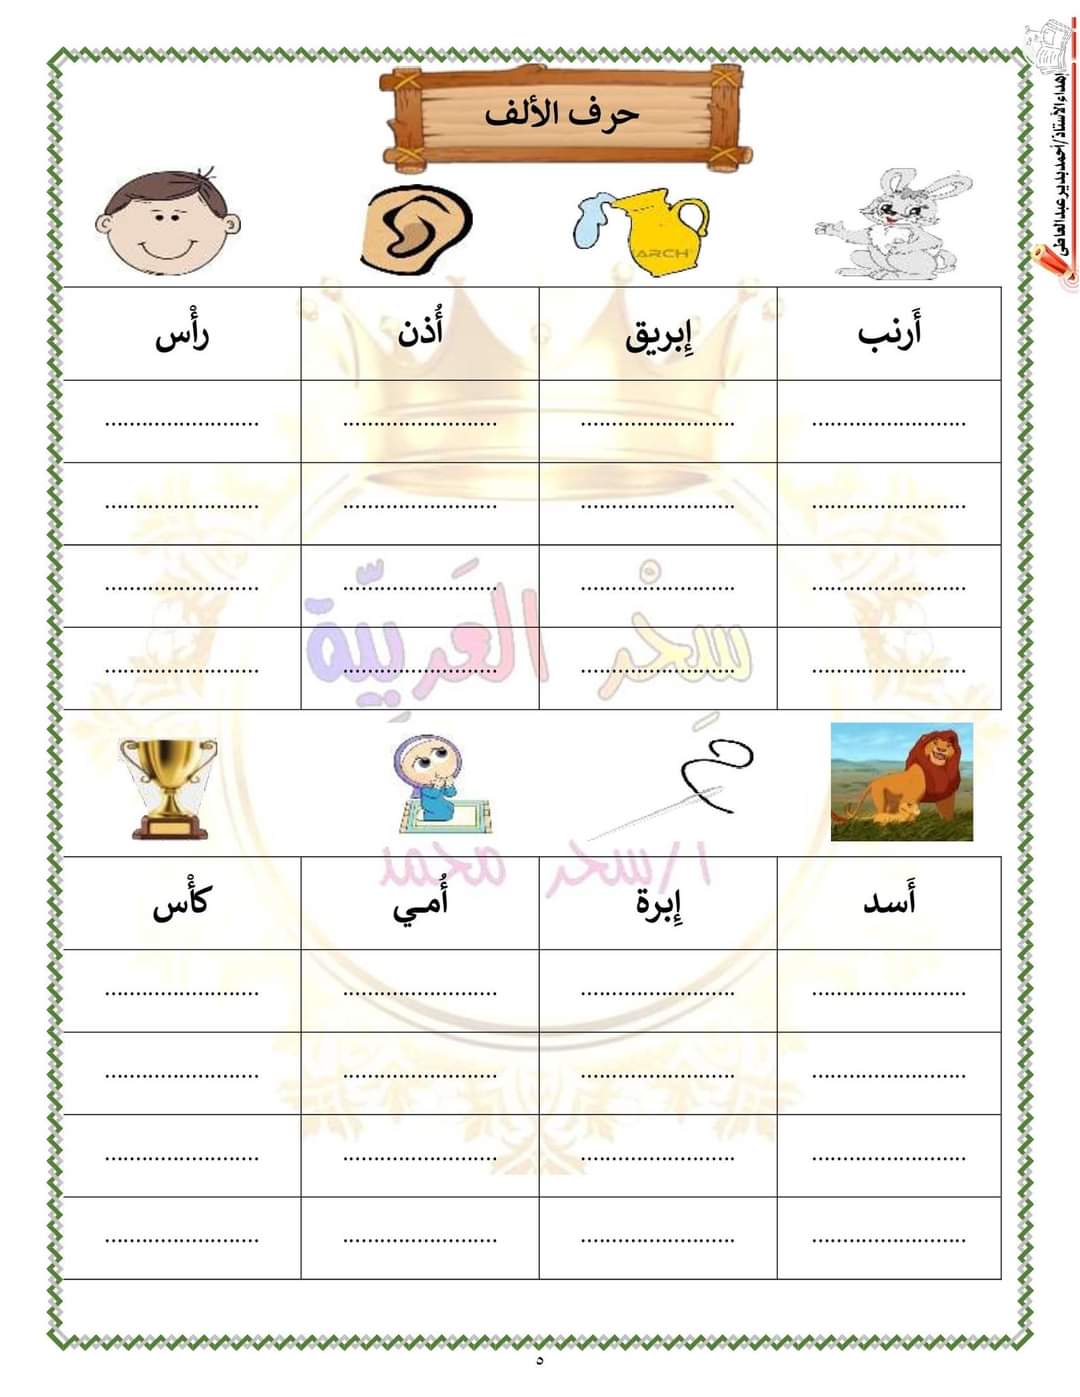 ملزمة اللغة العربية للصف الأول الابتدائي الترم الاول سحر محمد